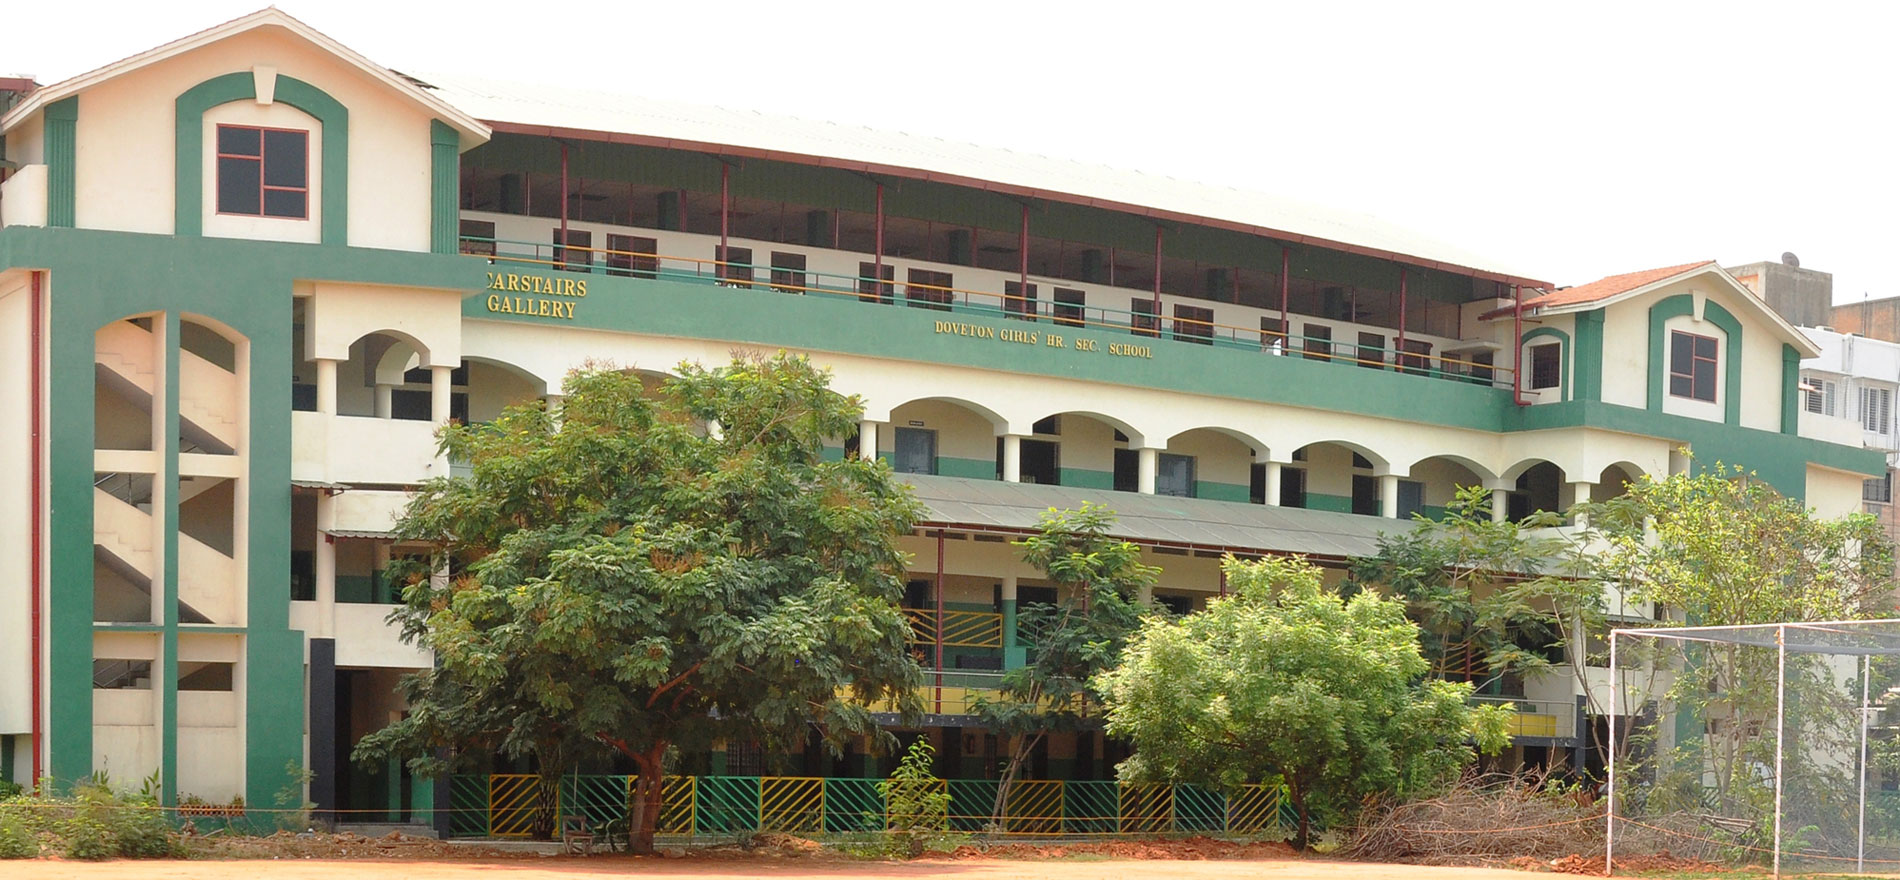 THE DOVETON SCHOOL